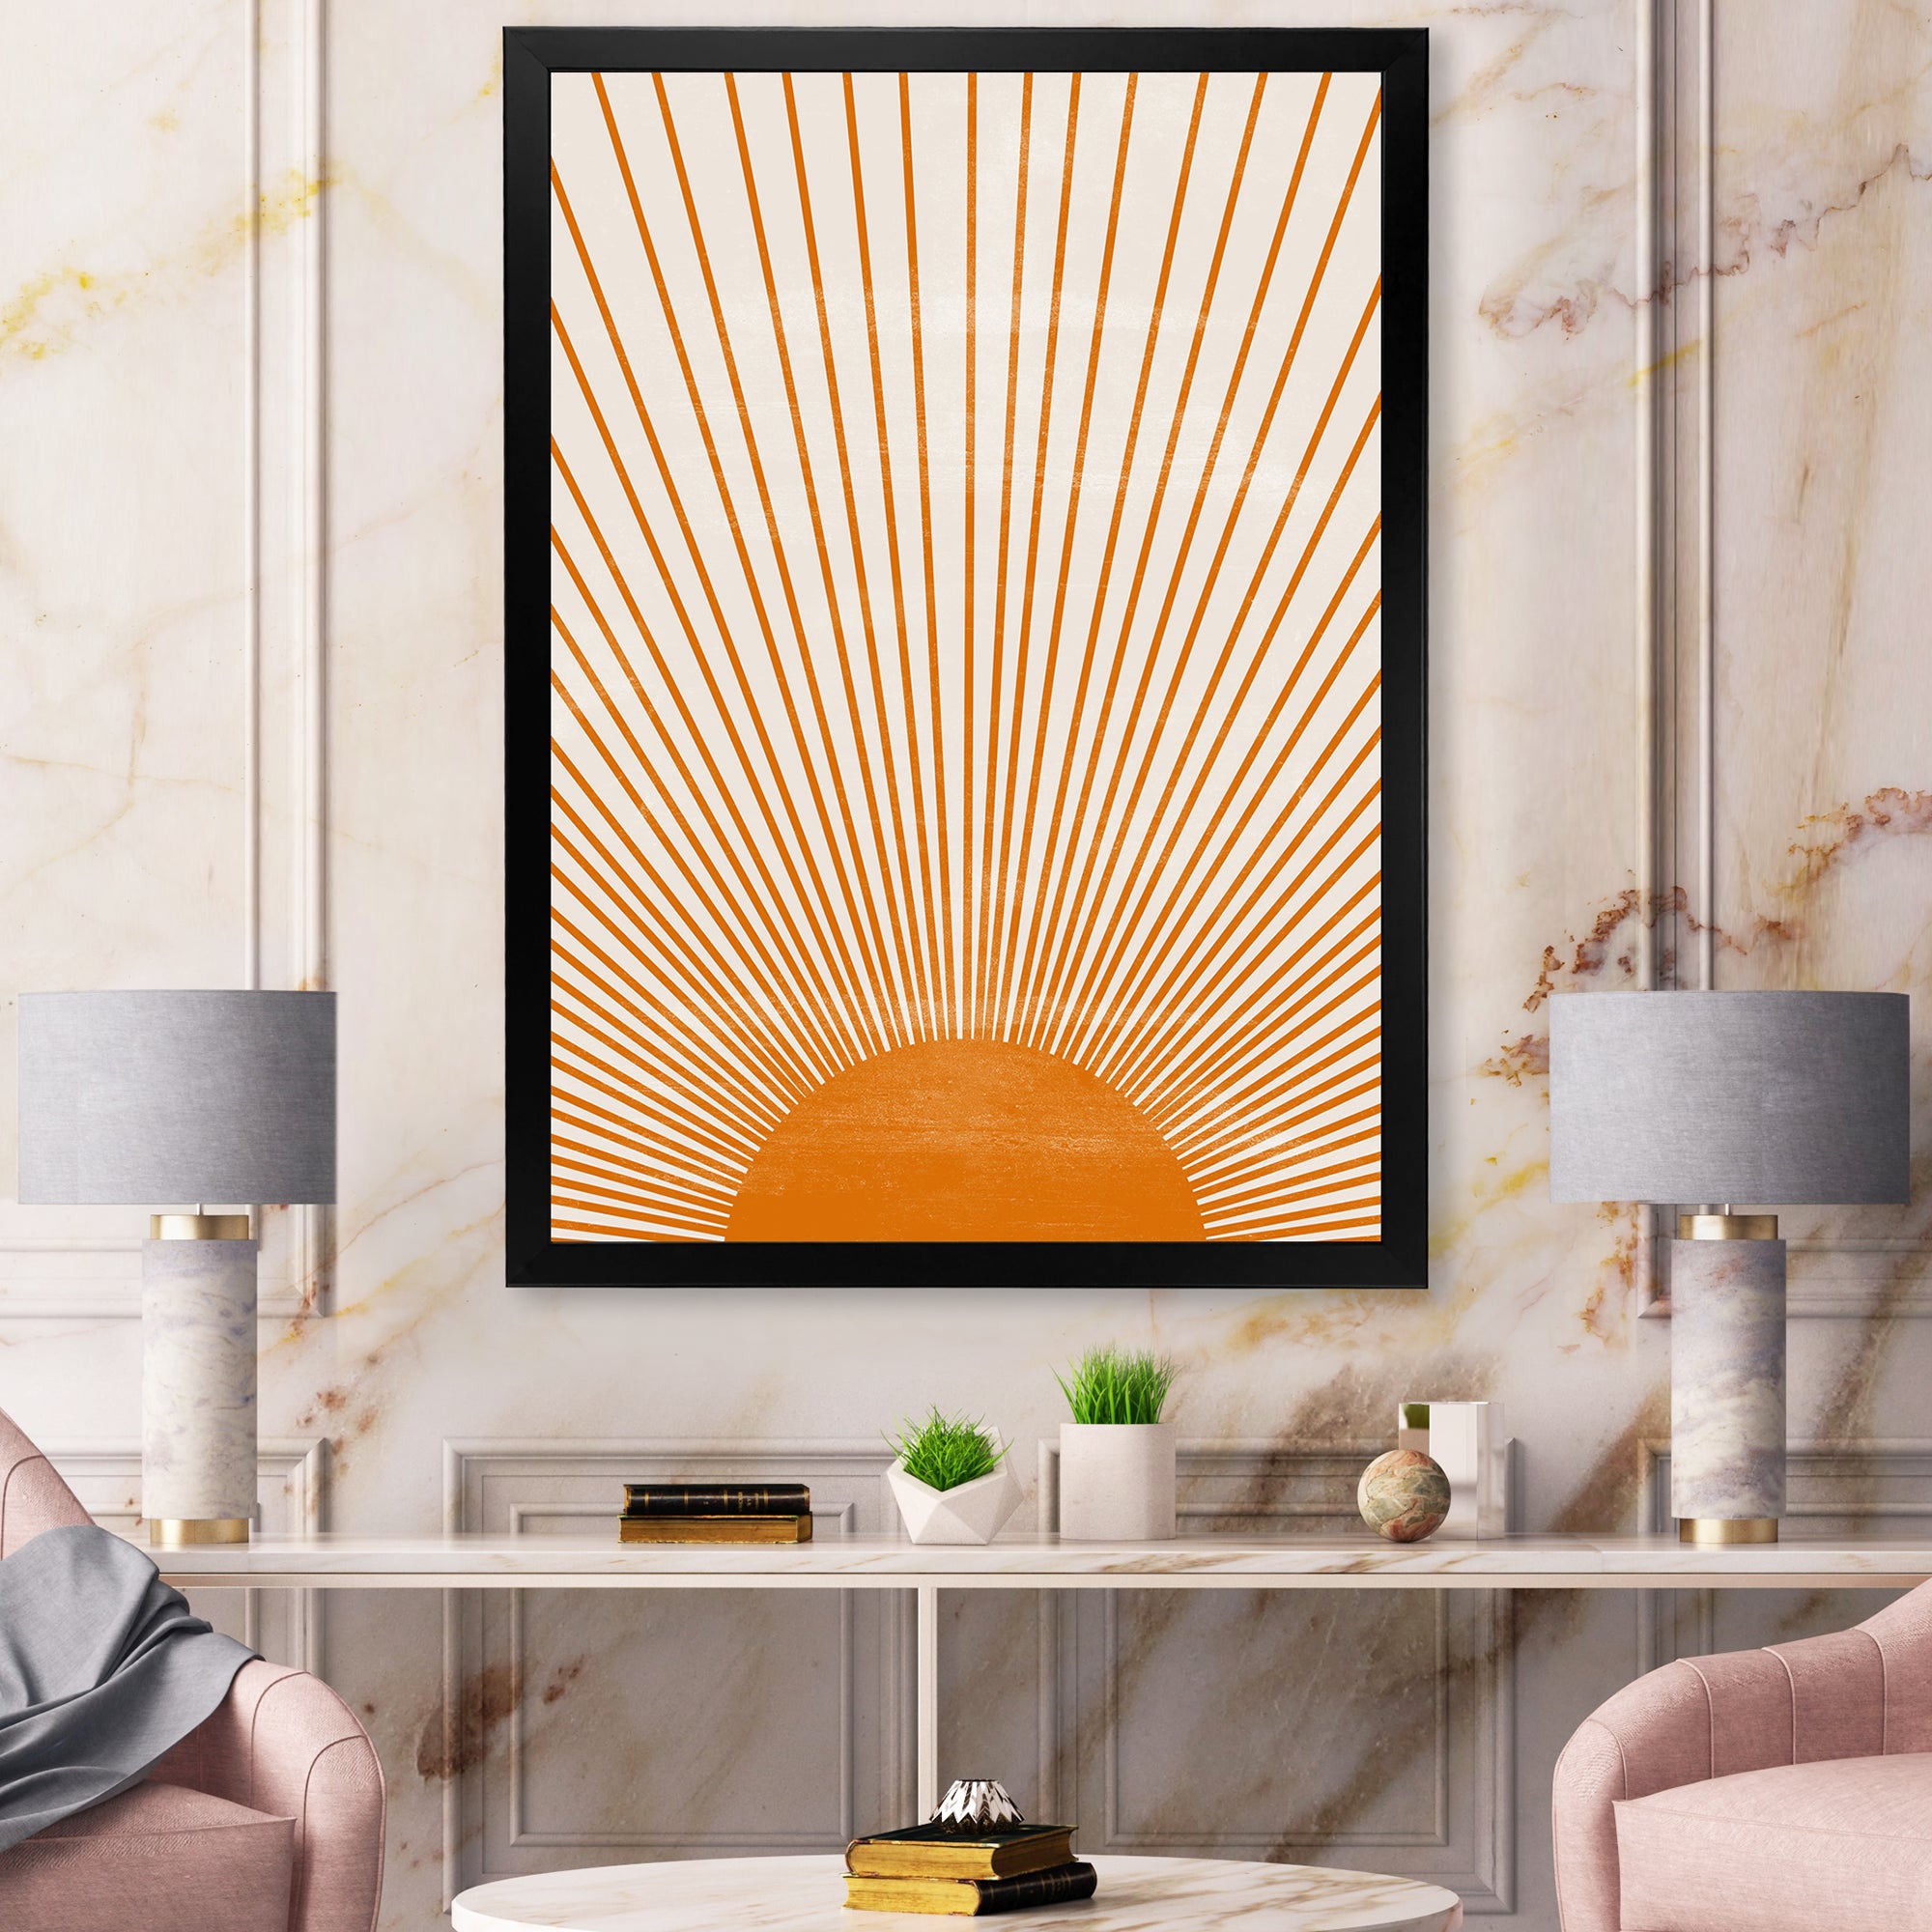 Orange Sun Print III Wall Art